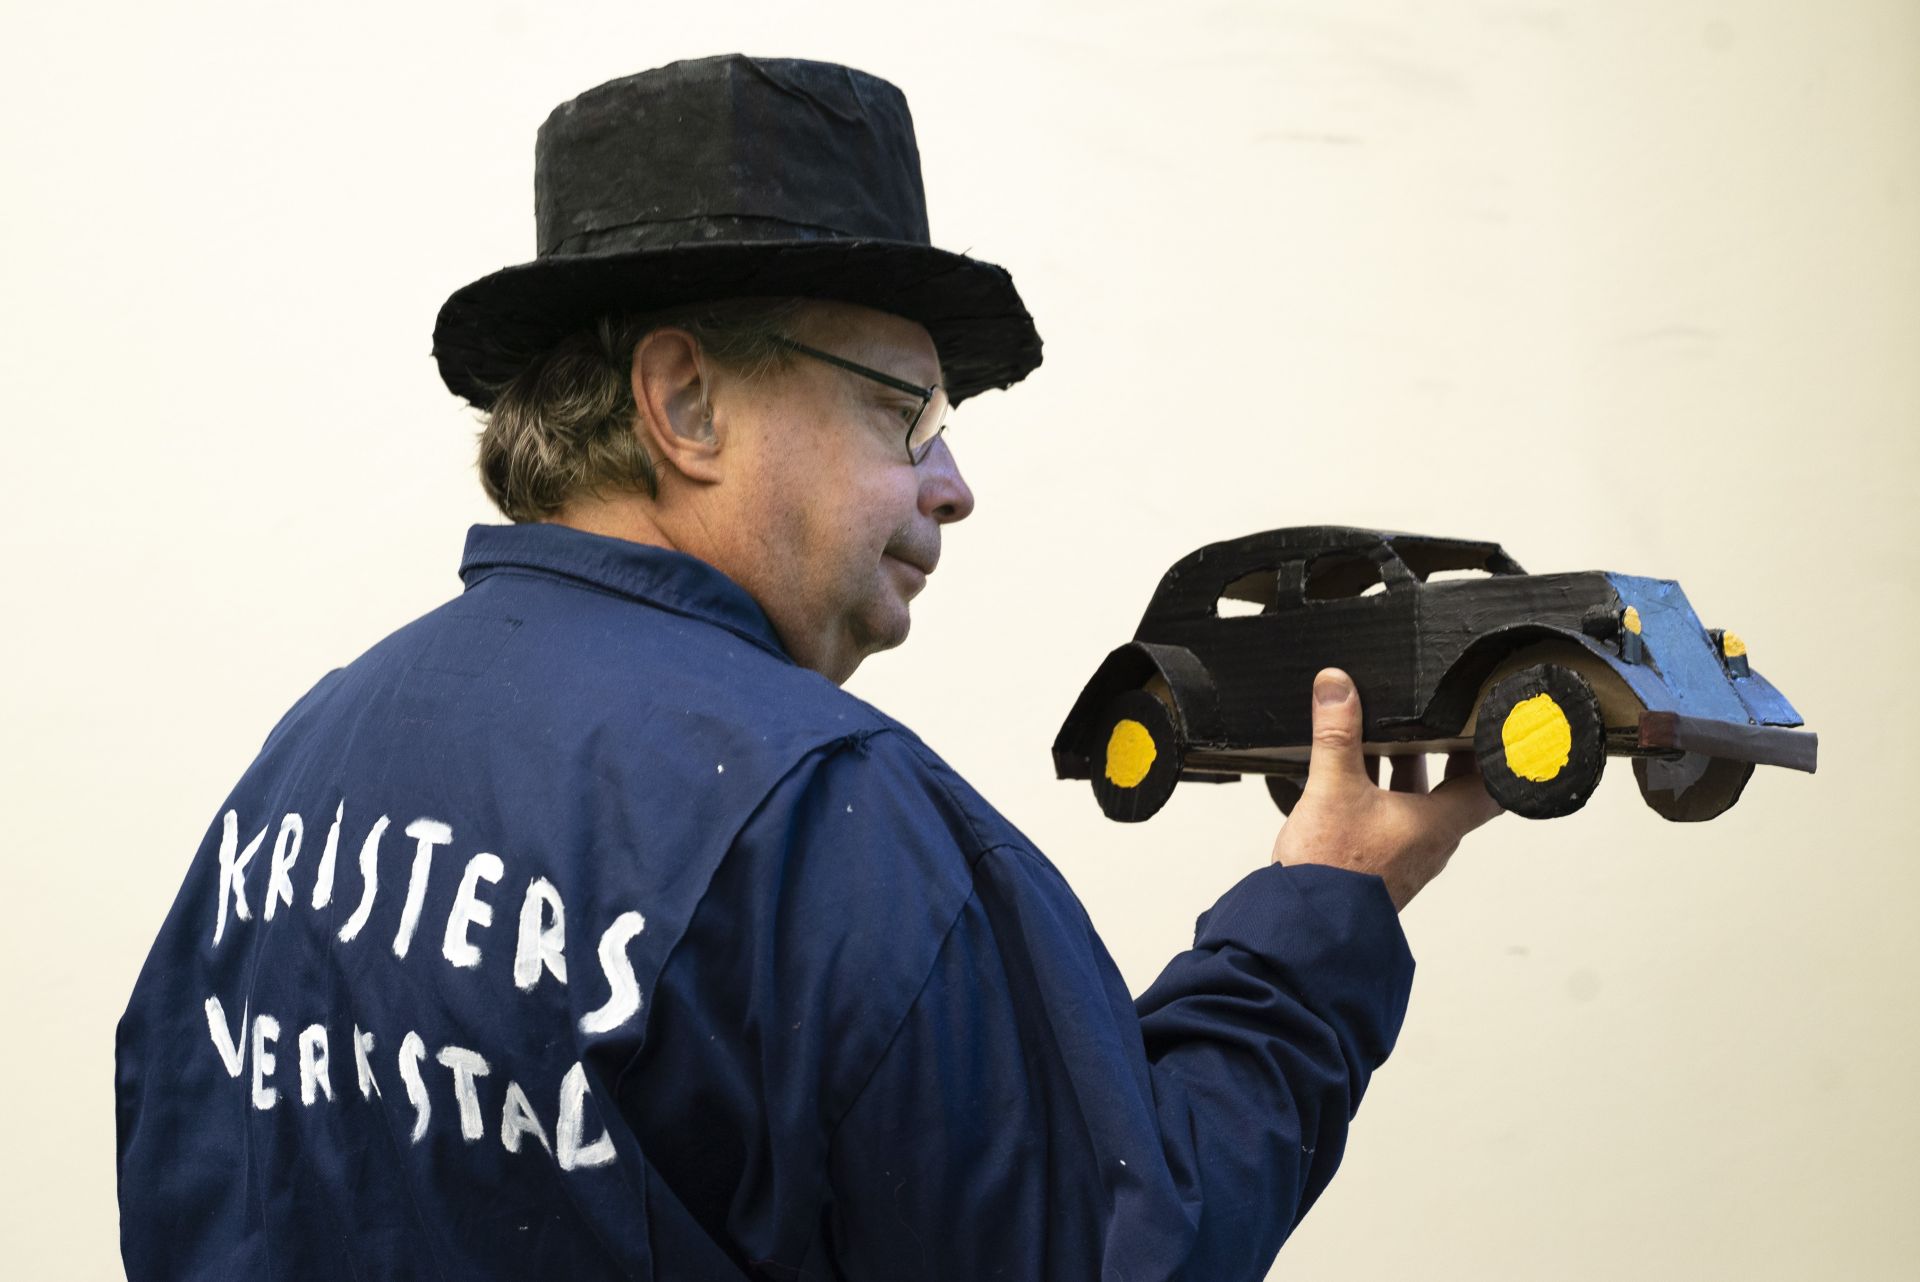 Skådespelare Krister Ekebom iklädd en svart hatt och en blå arbetshalare. Han står med ryggen snett mot kameran och håller en svart bil tillverkad av papp i handen. På hans rygg är texten Kristers verkstad målad. 